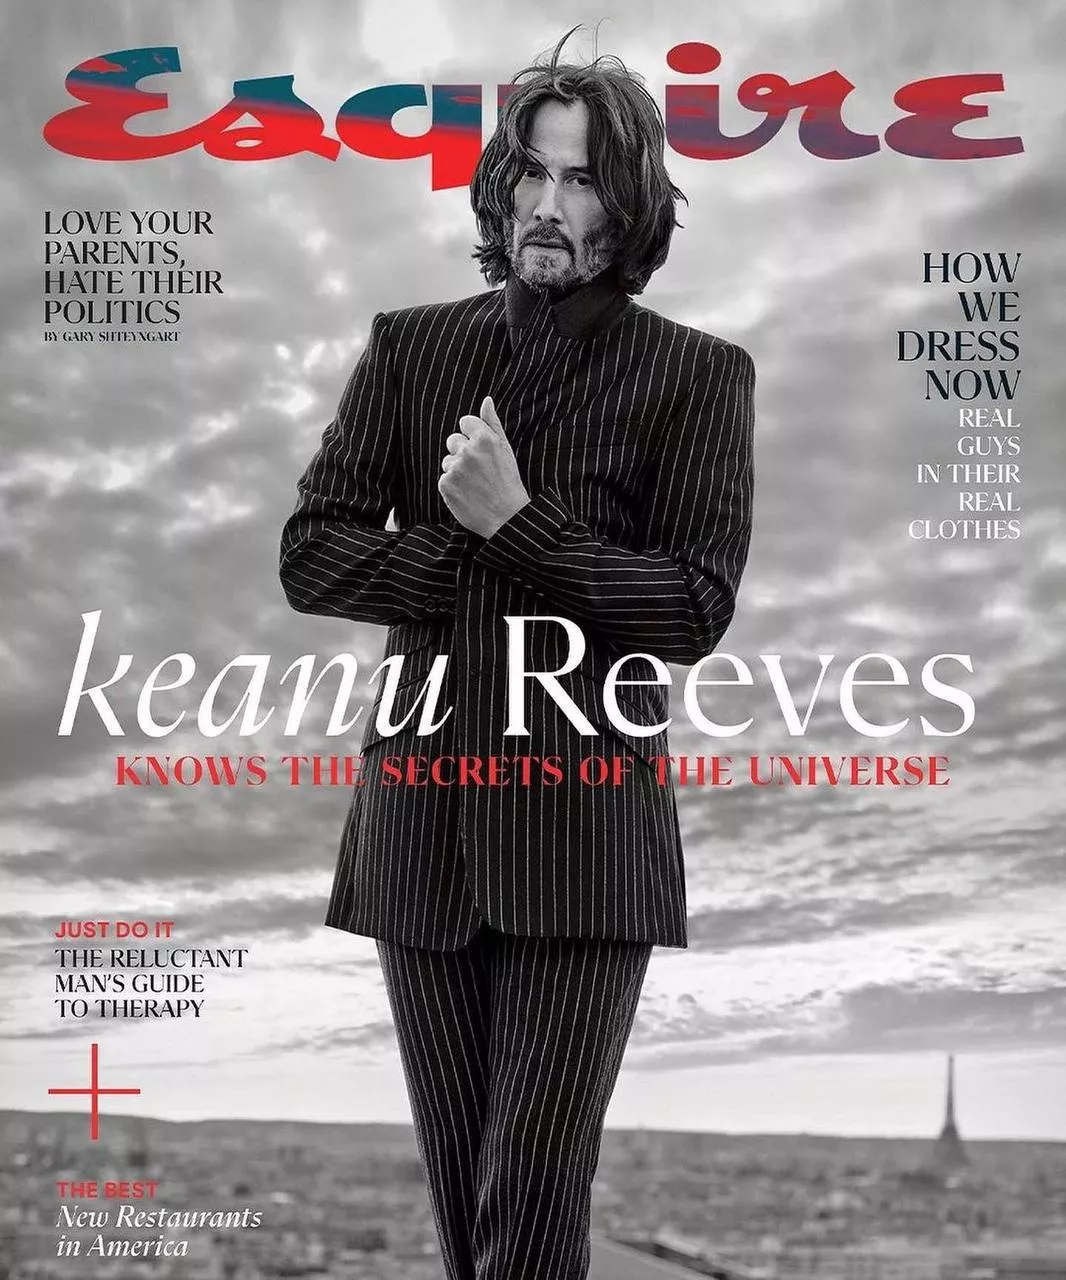 Киану Ривз на обложке журнала Esquire